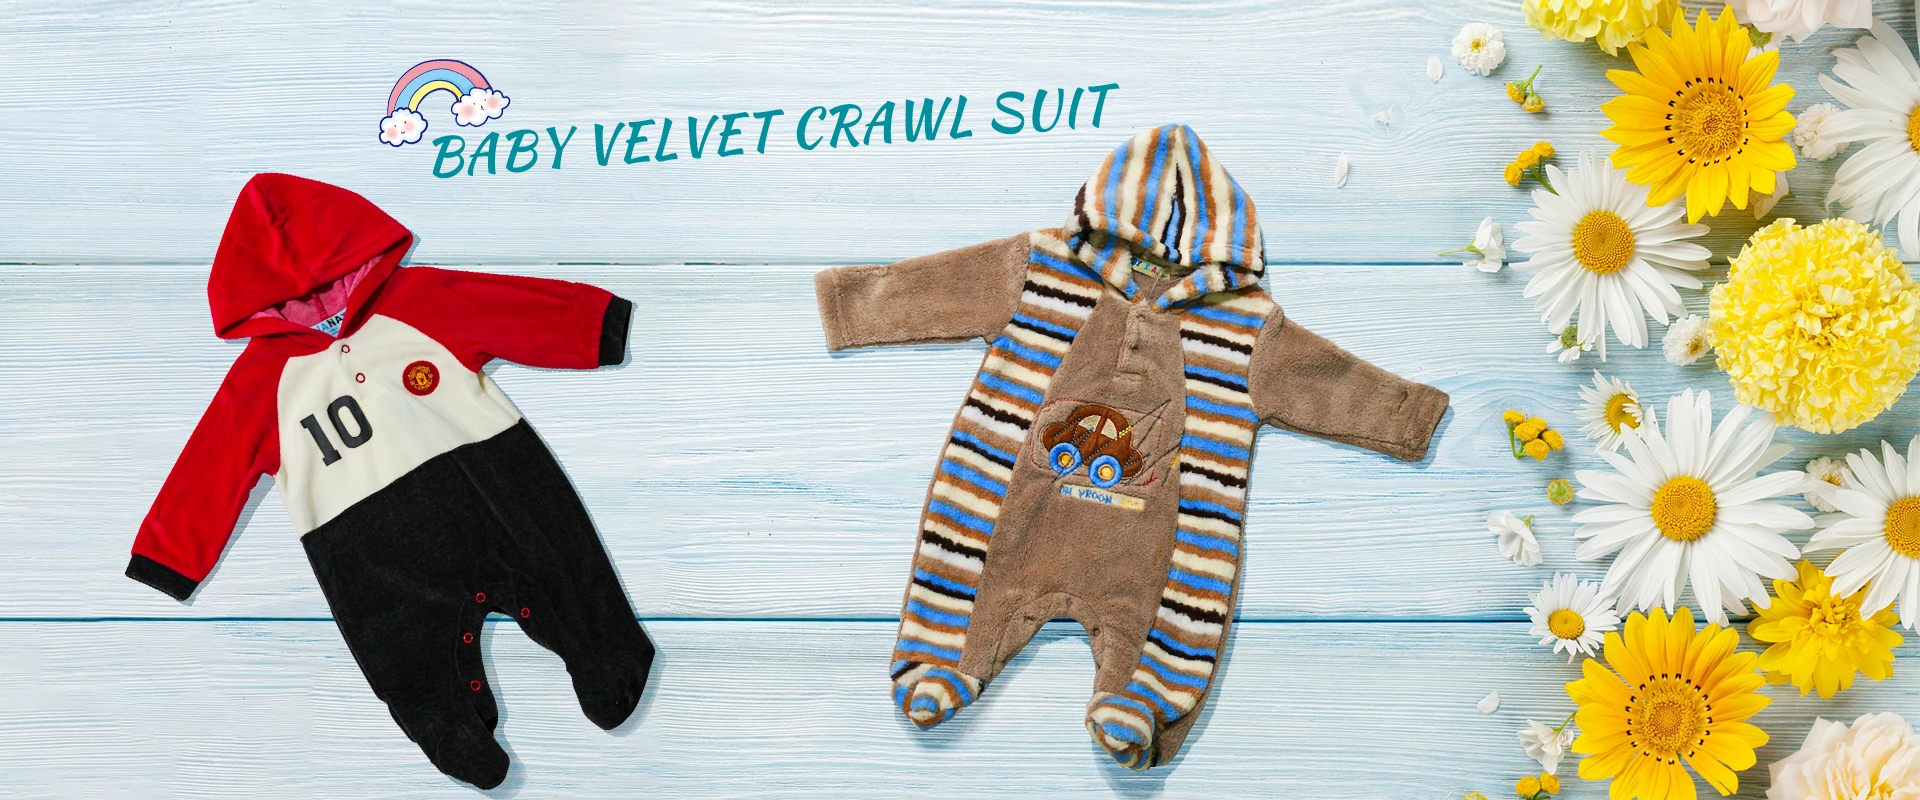 Fabbrica della Cina Baby Velvet Crawl Suit